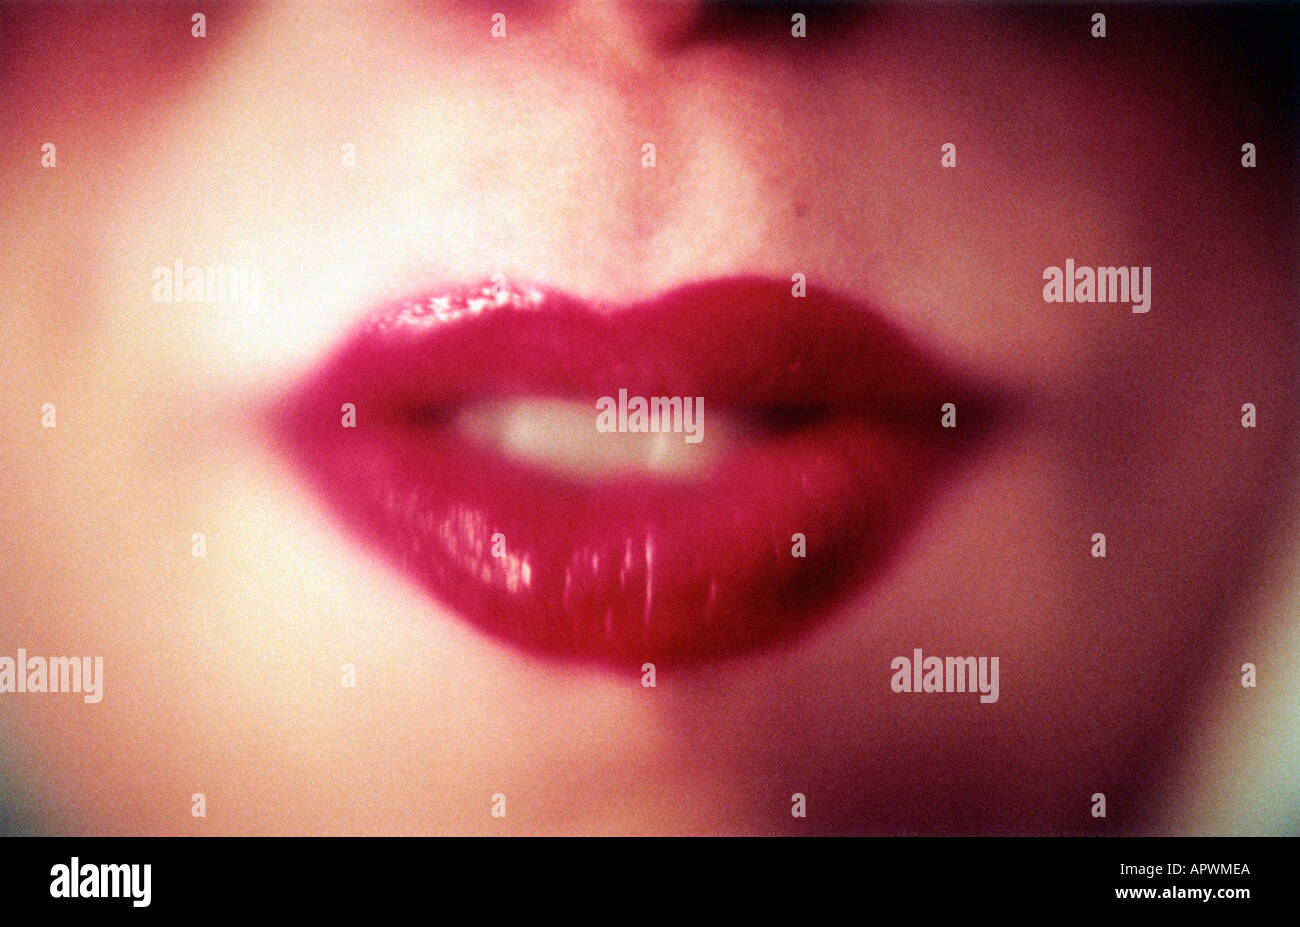 Woman wearing red lipstick Stock Photo